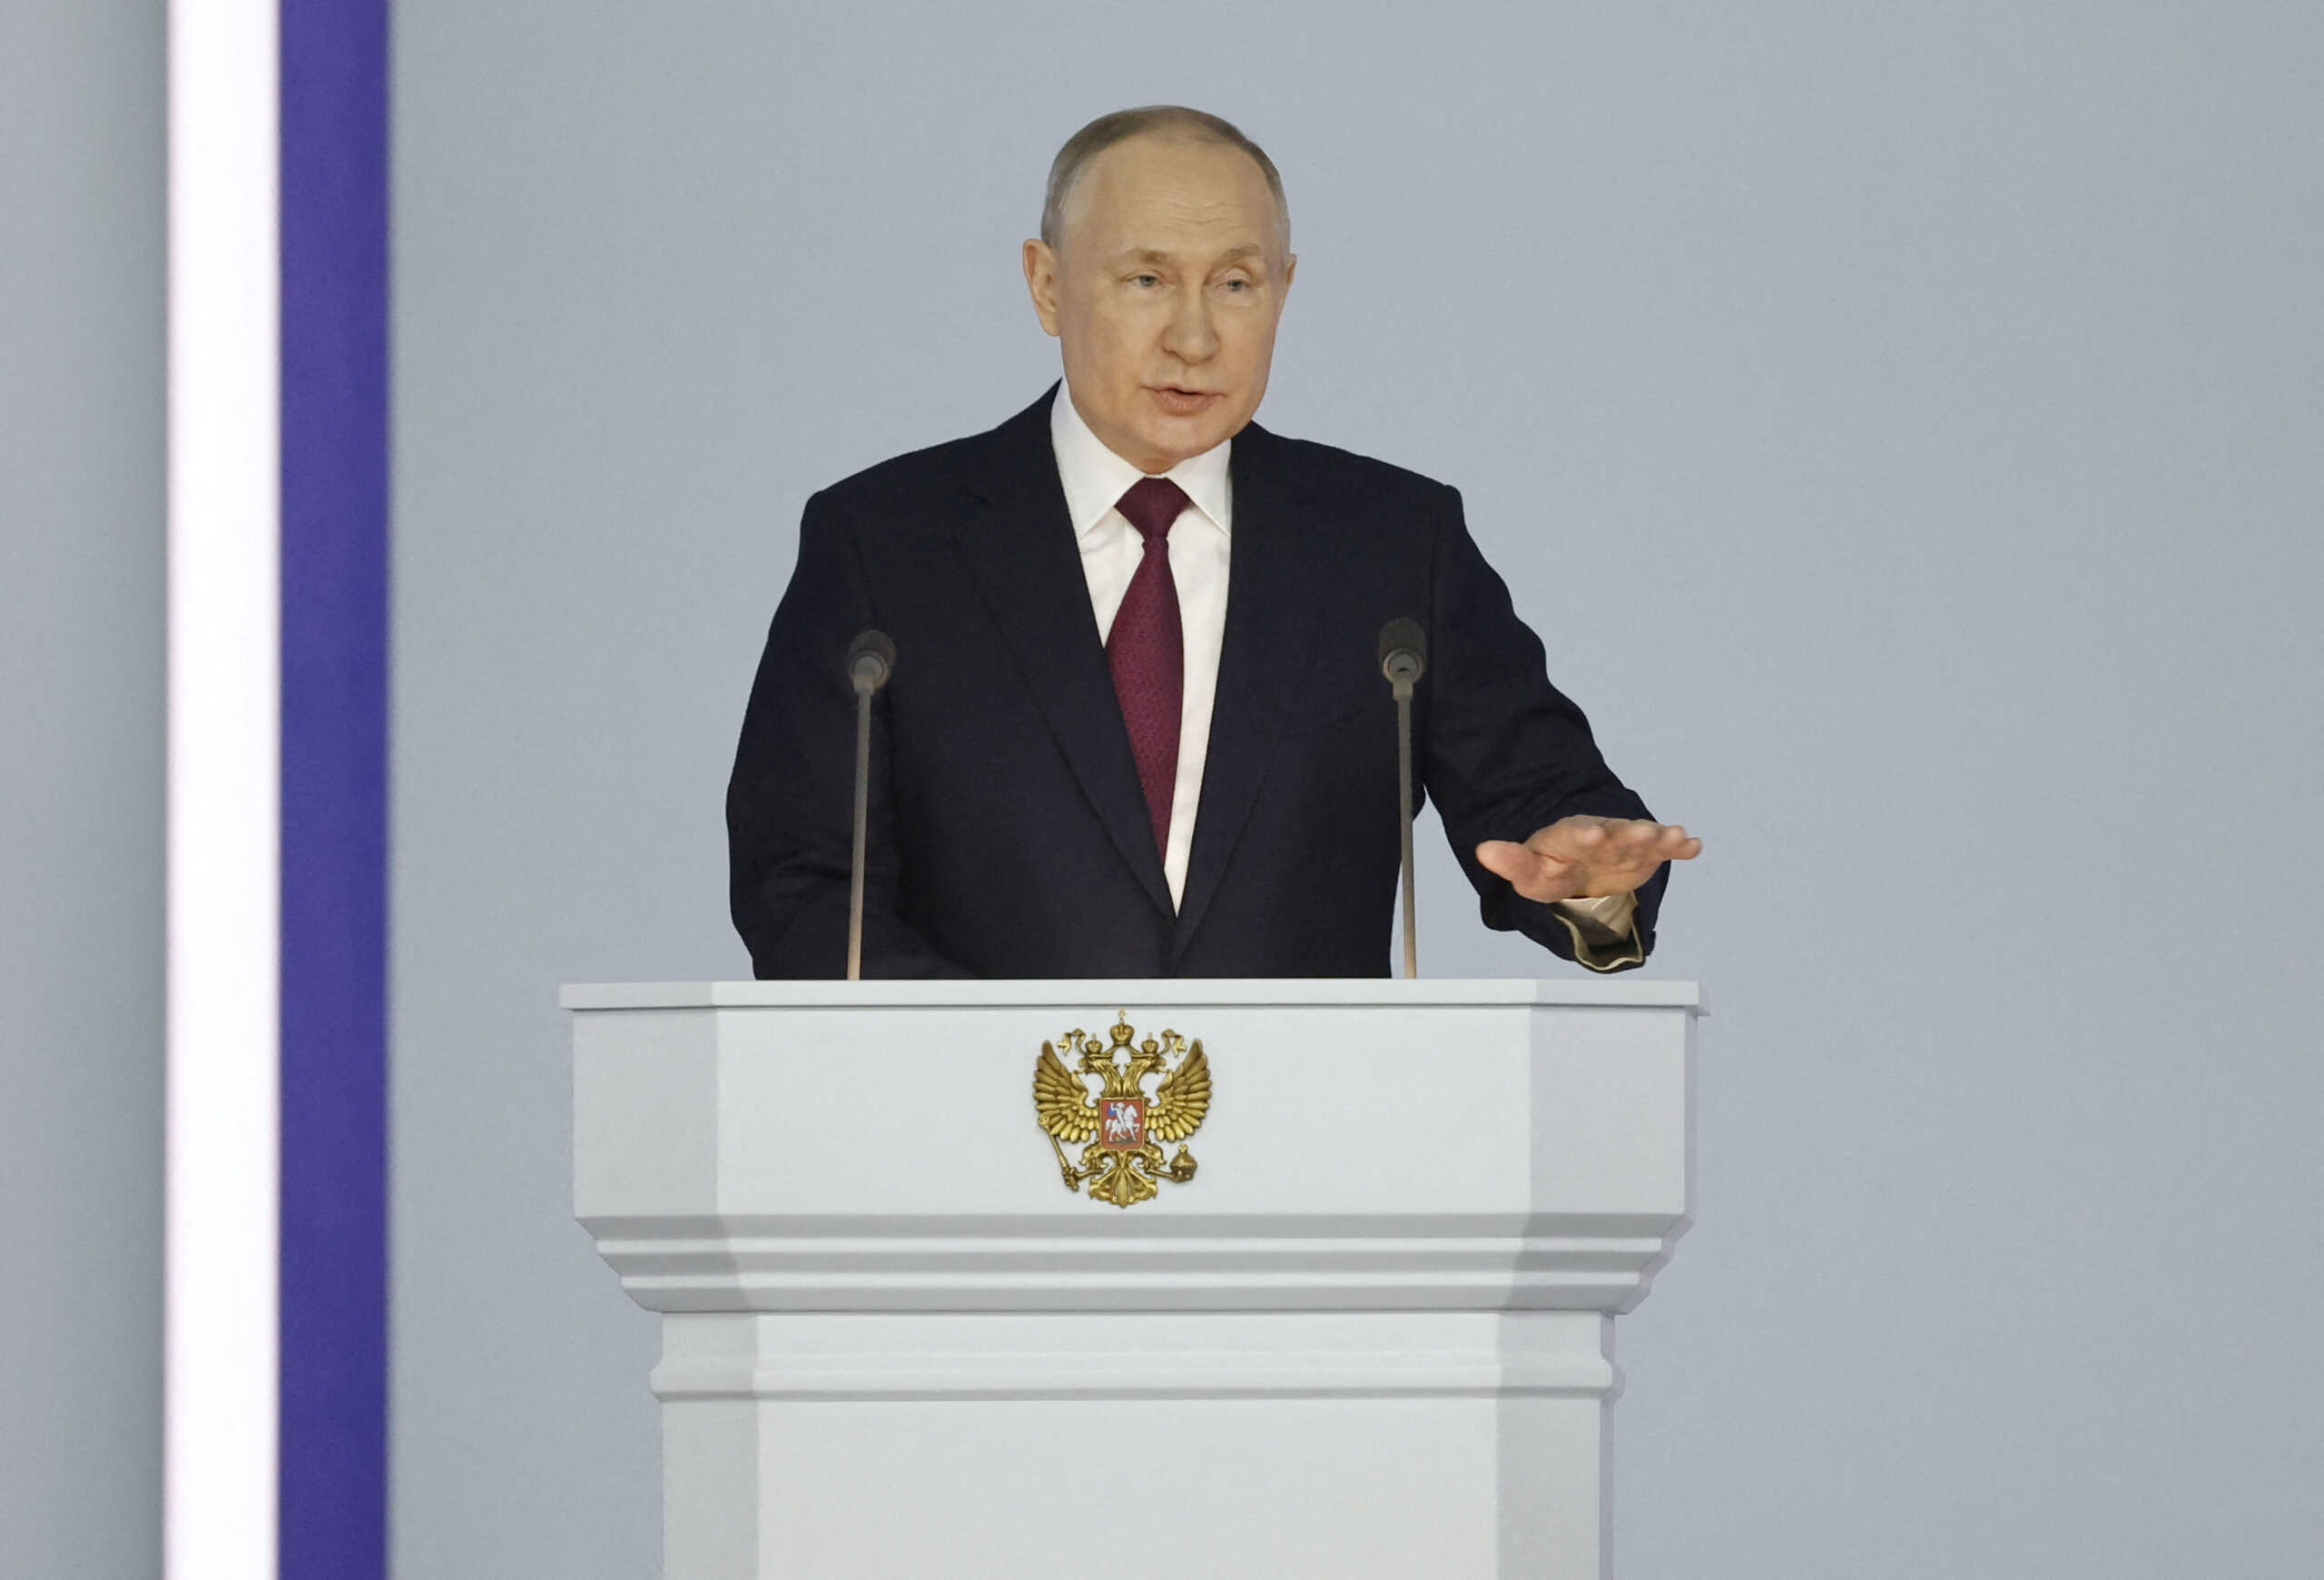 Ένταλμα σύλληψης σε βάρος του Βλαντιμίρ Πούτιν: Για ποια εγκλήματα κατηγορείται επισήμως ο πρόεδρος της Ρωσίας